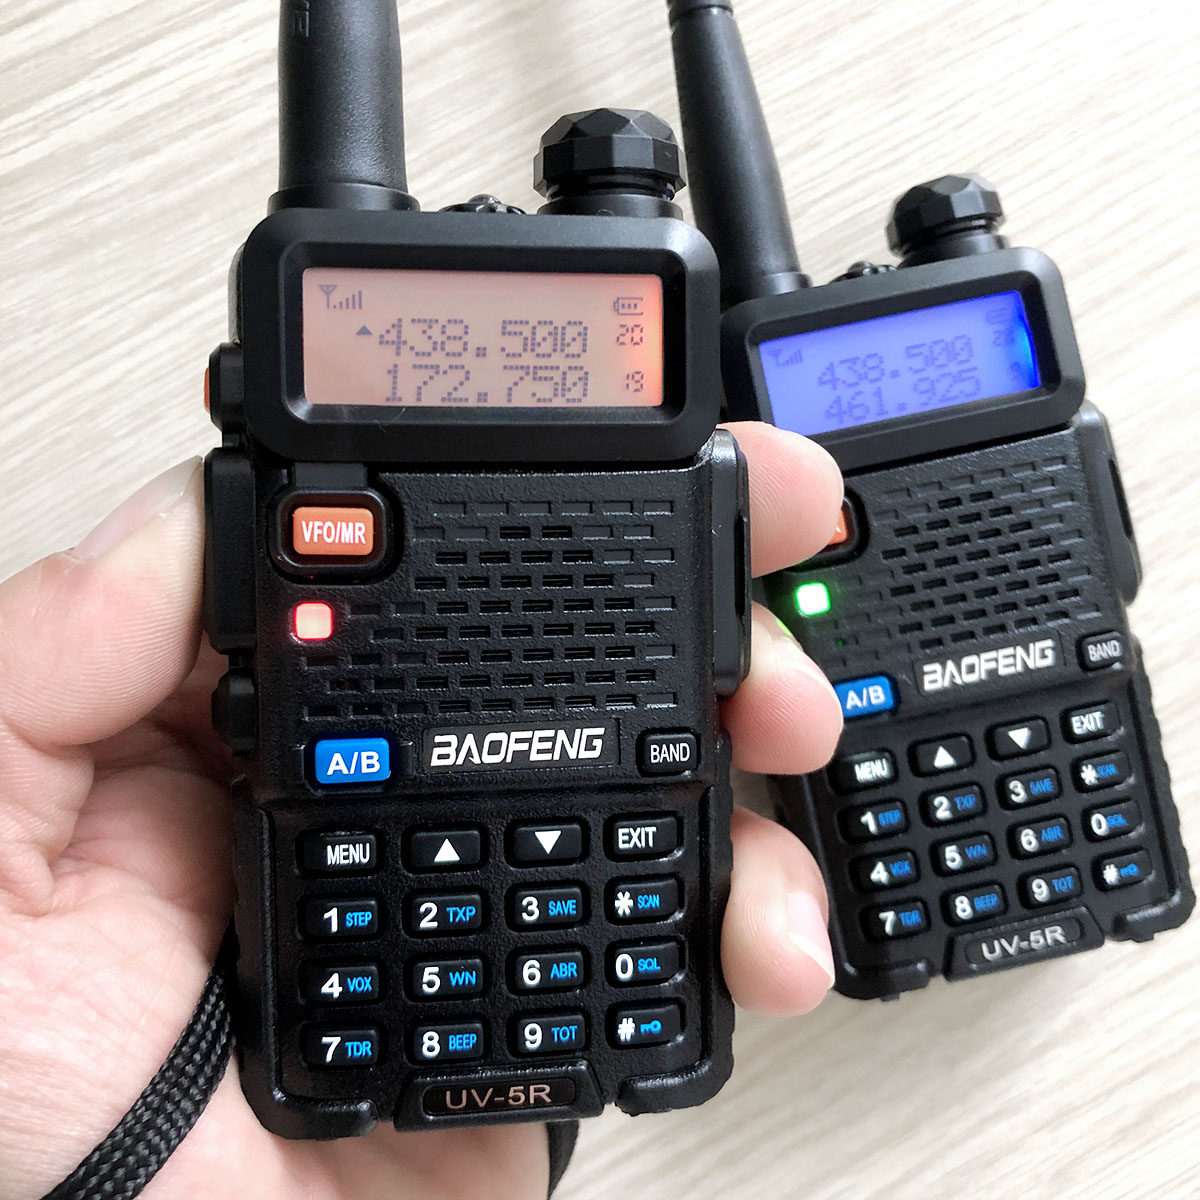 Bộ đàm Baofeng UV-5R phiên bản mới nhỏ gọn | Bộ đàm 2 băng tần số UHF/VHF kết hợp nghe đài FM và đèn pin chiếu sáng kèm tai nghe chuyên dụng cho bộ đàm - Hàng chính hãng